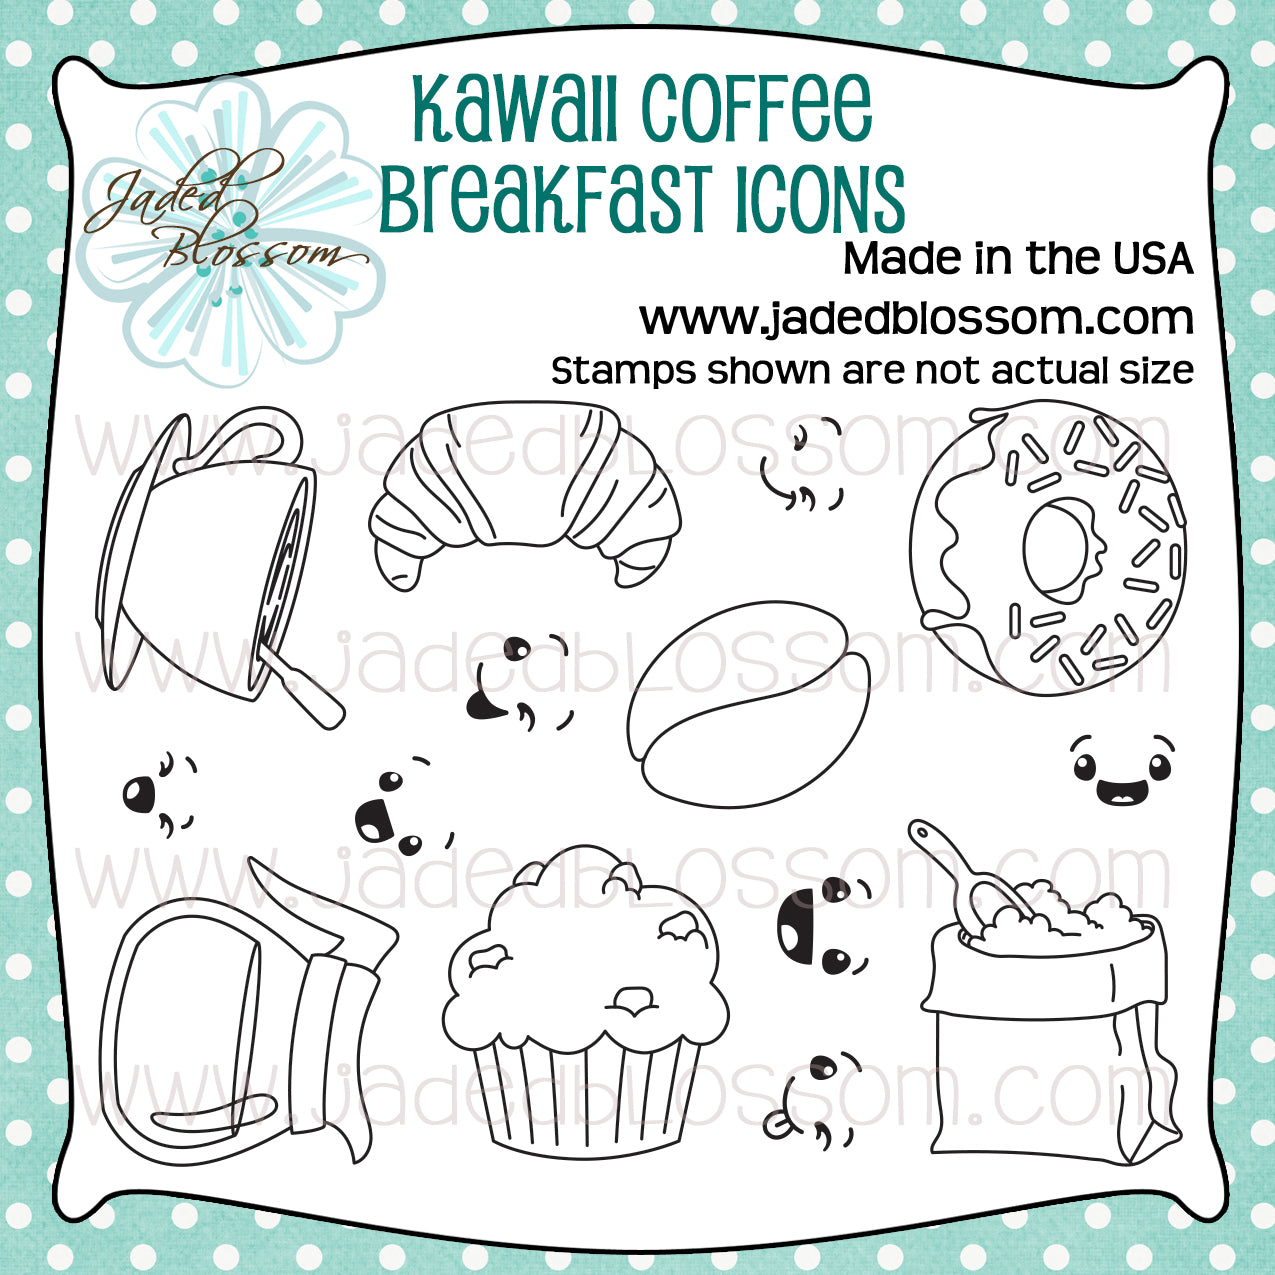 Kawaii Coffee Breakfast Icons